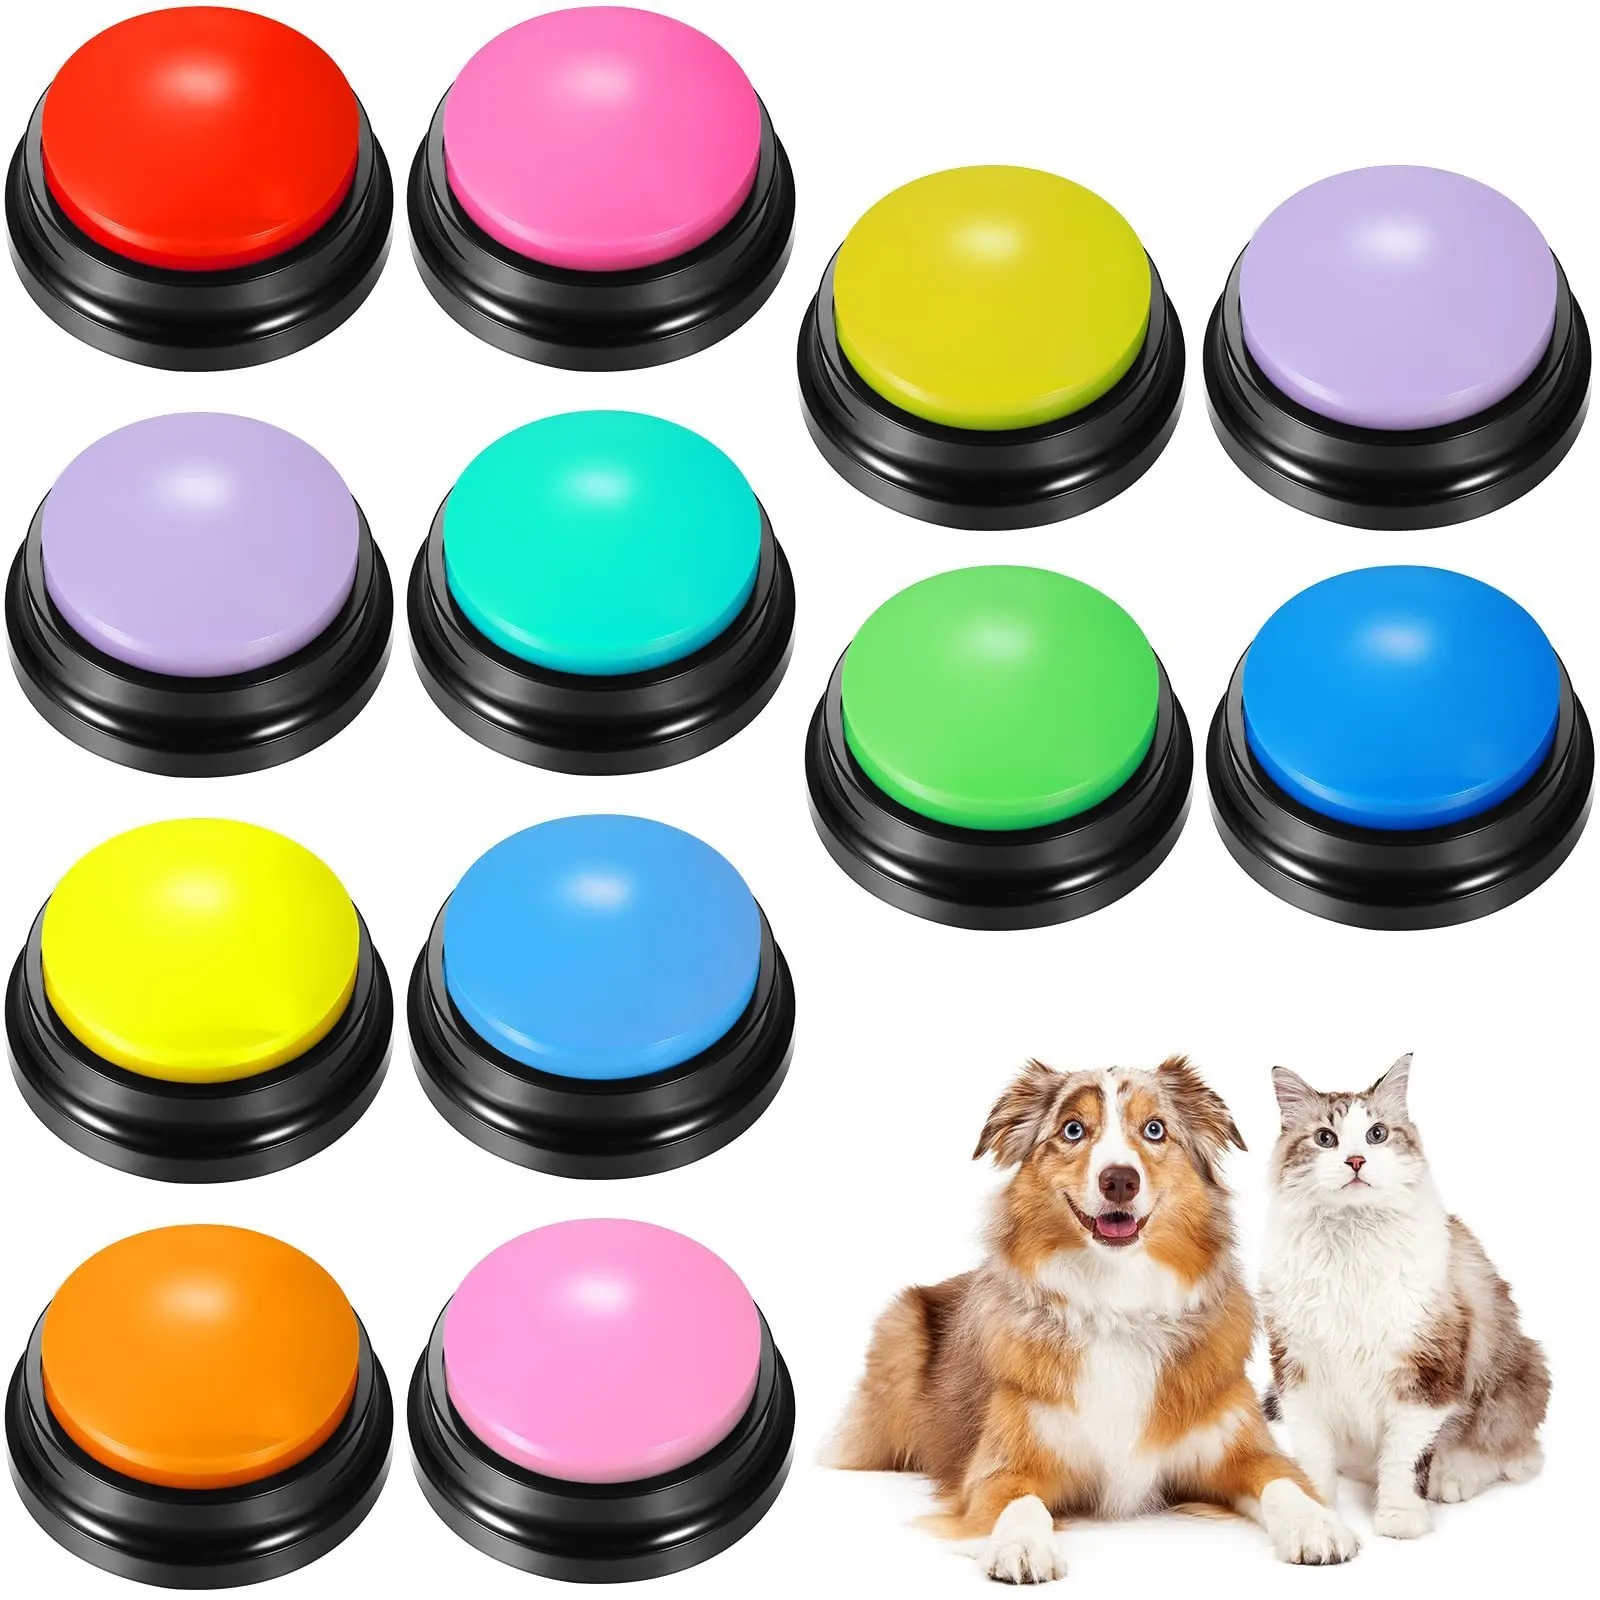 Boutons de discussion sur chien de bruit pour le bouton d'enregistrement de communication pour parler du buzzer Repeater Makers Party Toys répondant au jeu 221018